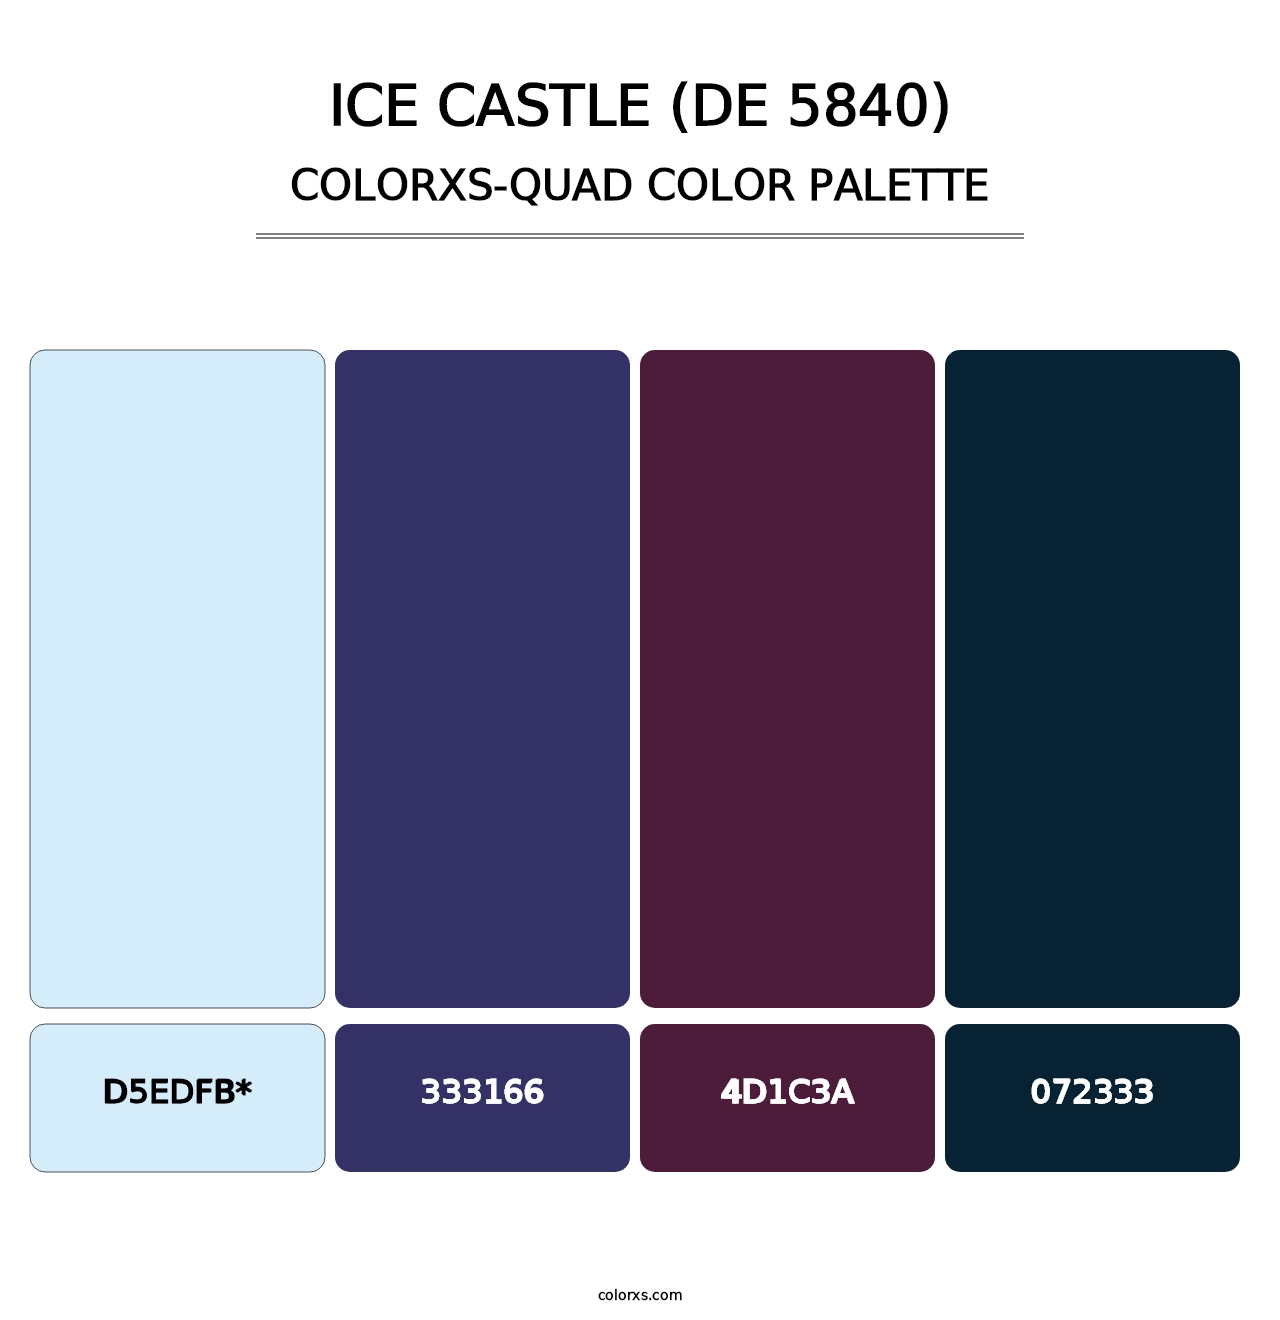 Ice Castle (DE 5840) - Colorxs Quad Palette